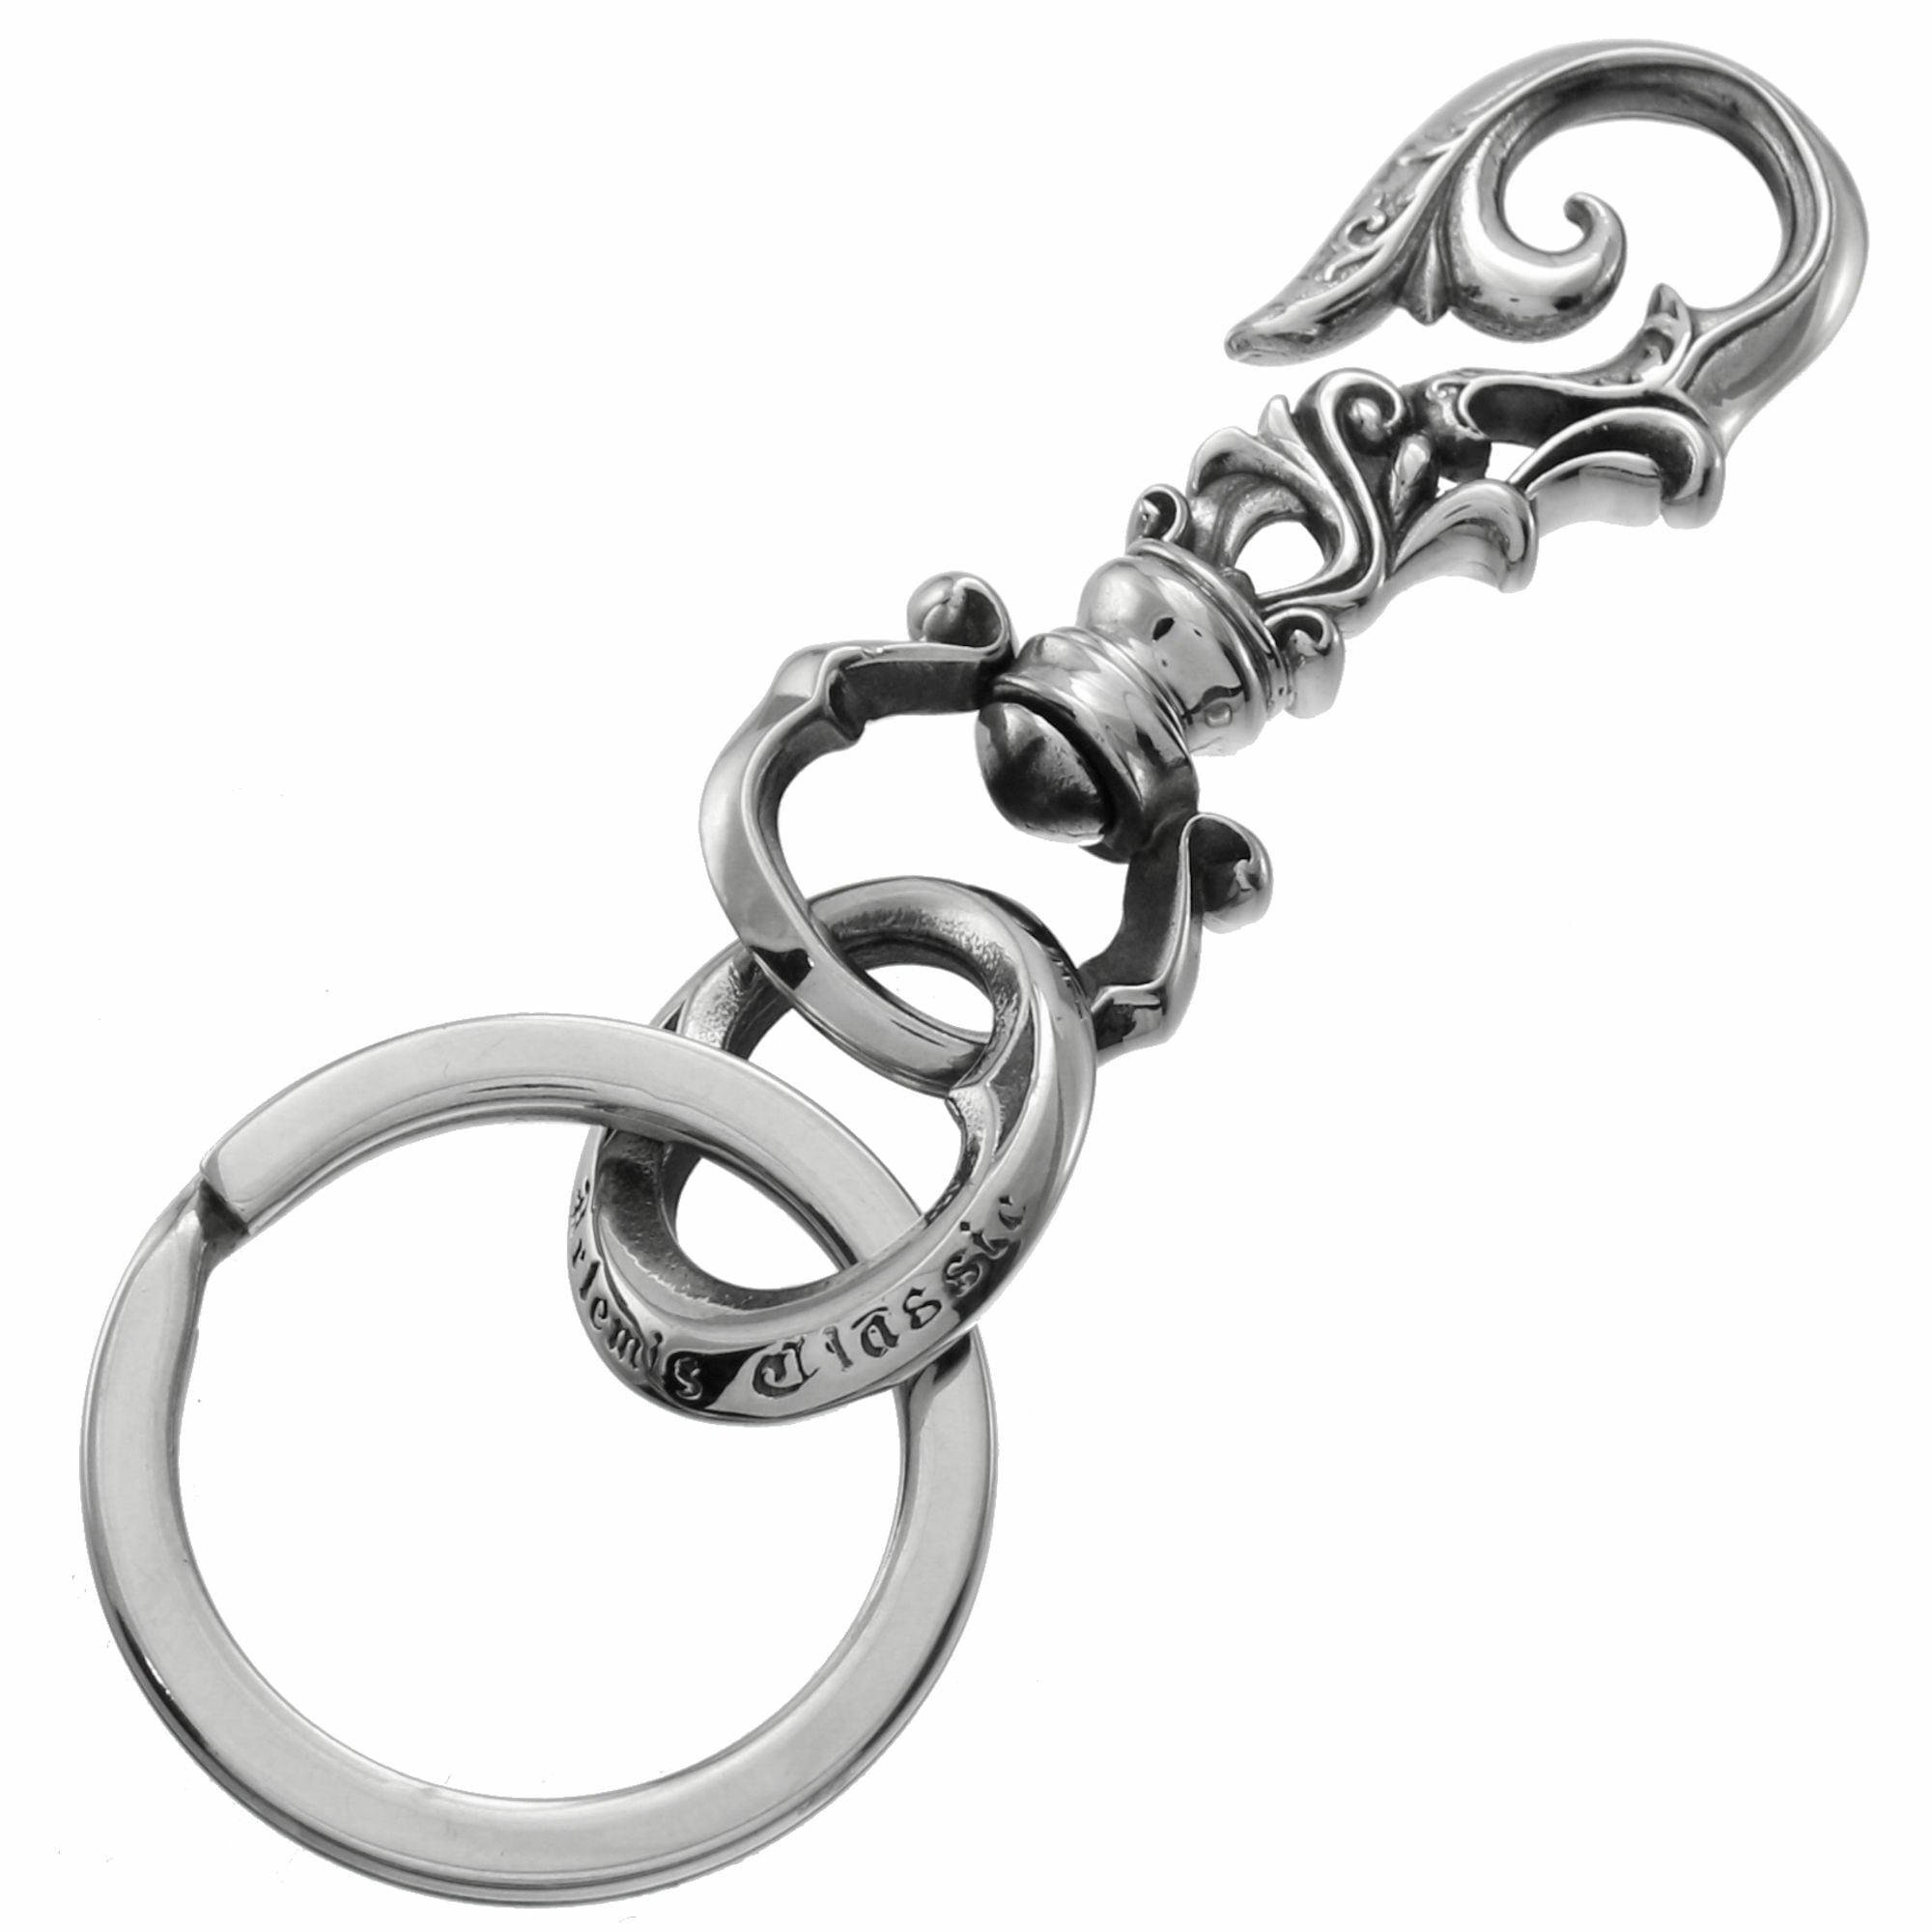 【キーホルダー売り上げランキング4位】アンティークベルトフックキーリング ACK0038　Antique belt hook key ring Jewelry Brand